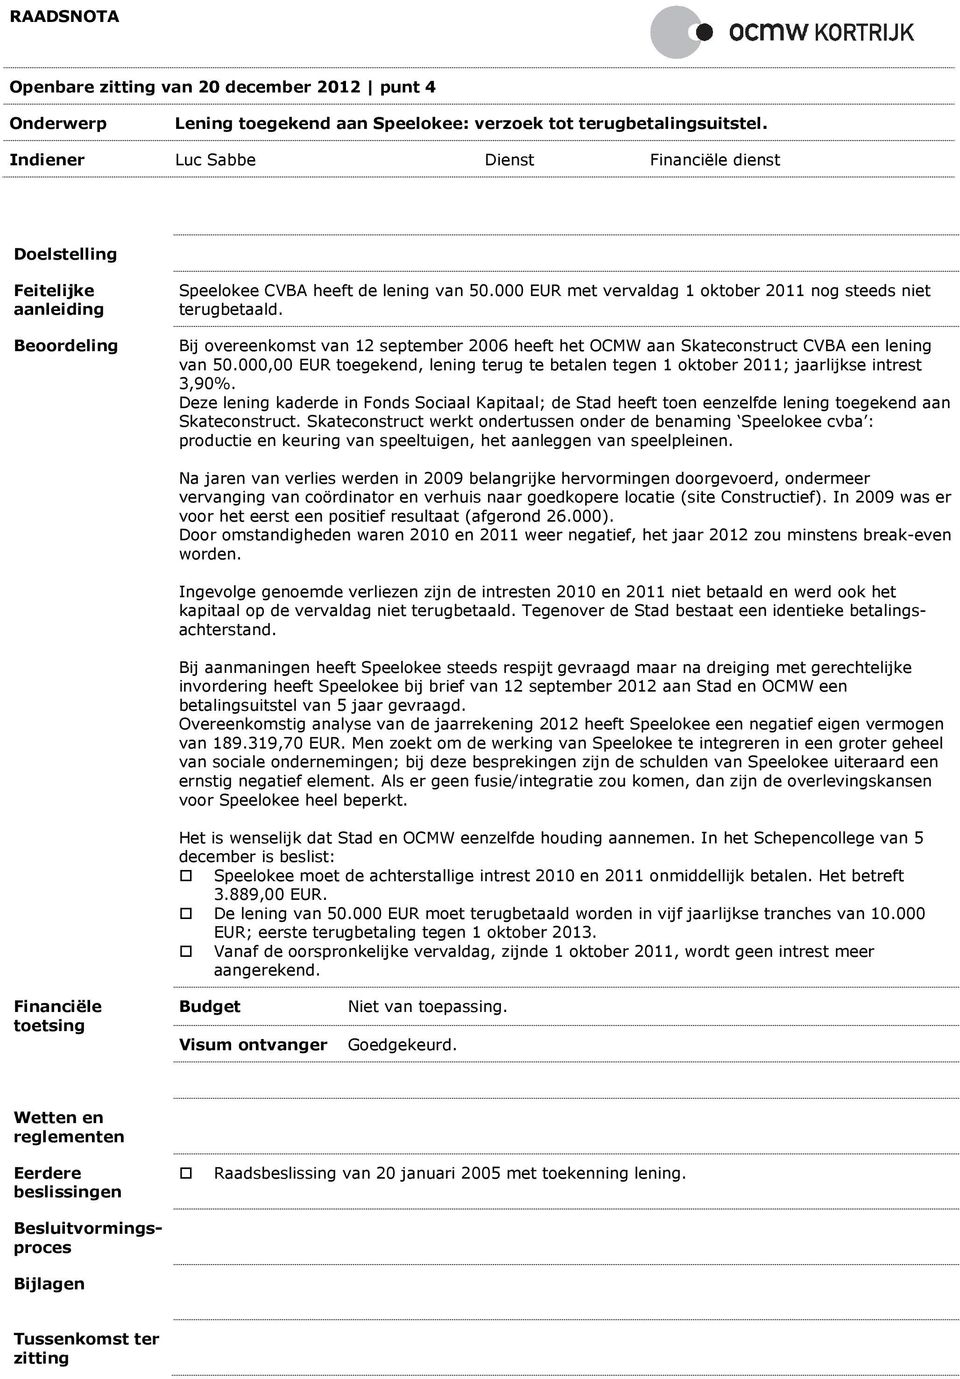 Bij overeenkomst van 12 september 2006 heeft het OCMW aan Skateconstruct CVBA een lening van 50.000,00 EUR toegekend, lening terug te betalen tegen 1 oktober 2011; jaarlijkse intrest 3,90%.